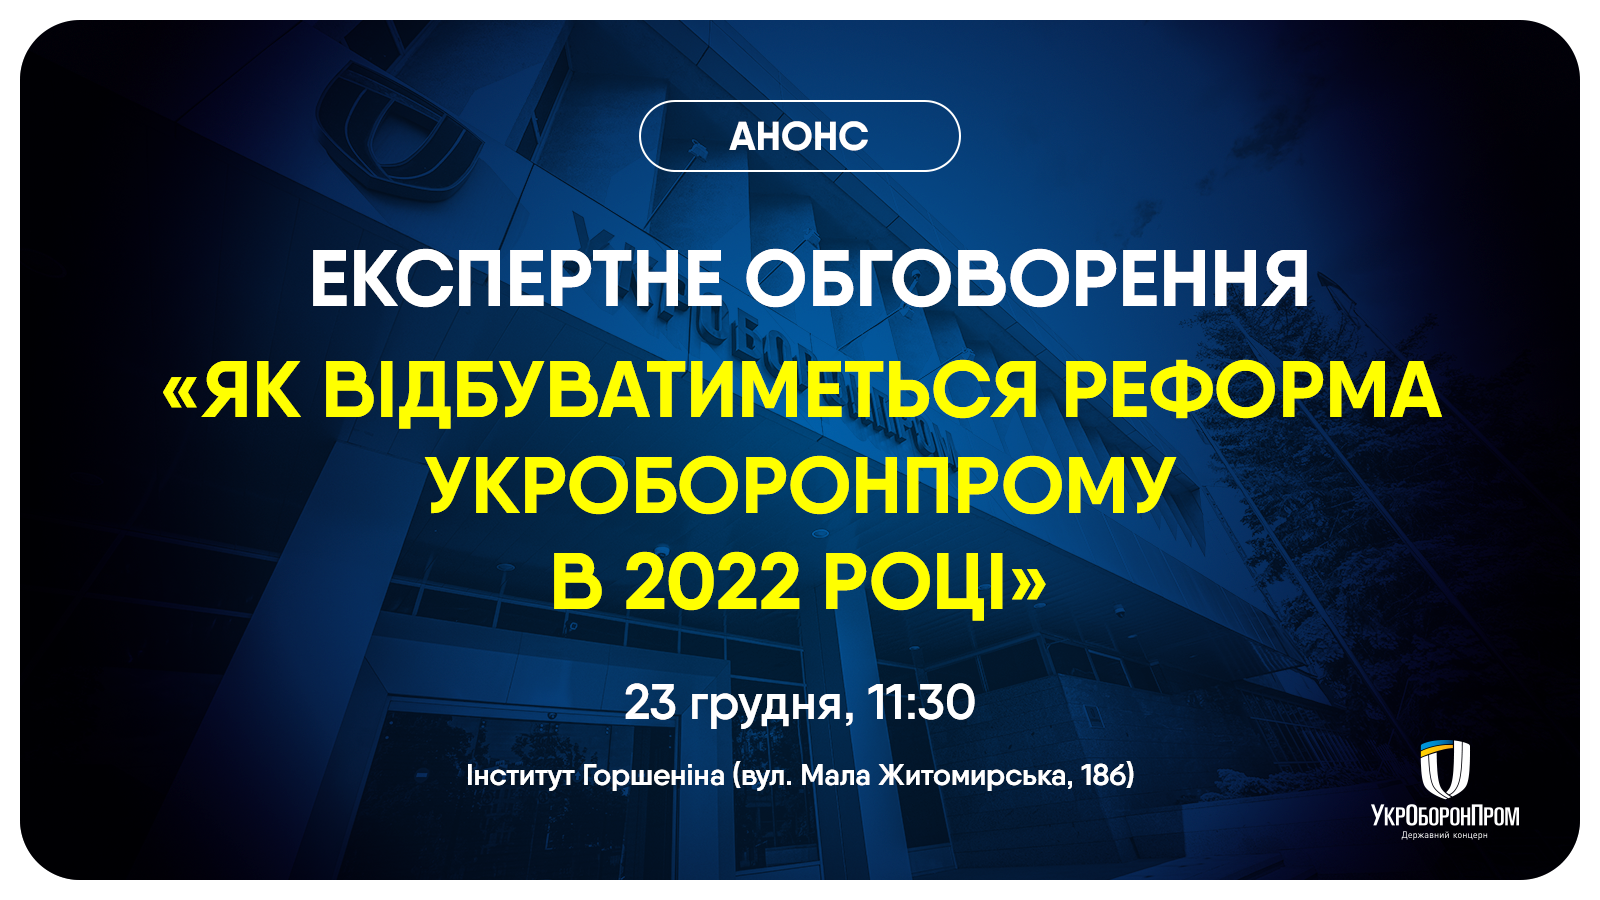 Анонс експертного обговорення «Як відбуватиметься реформа Укроборонпрому в 2022 році»